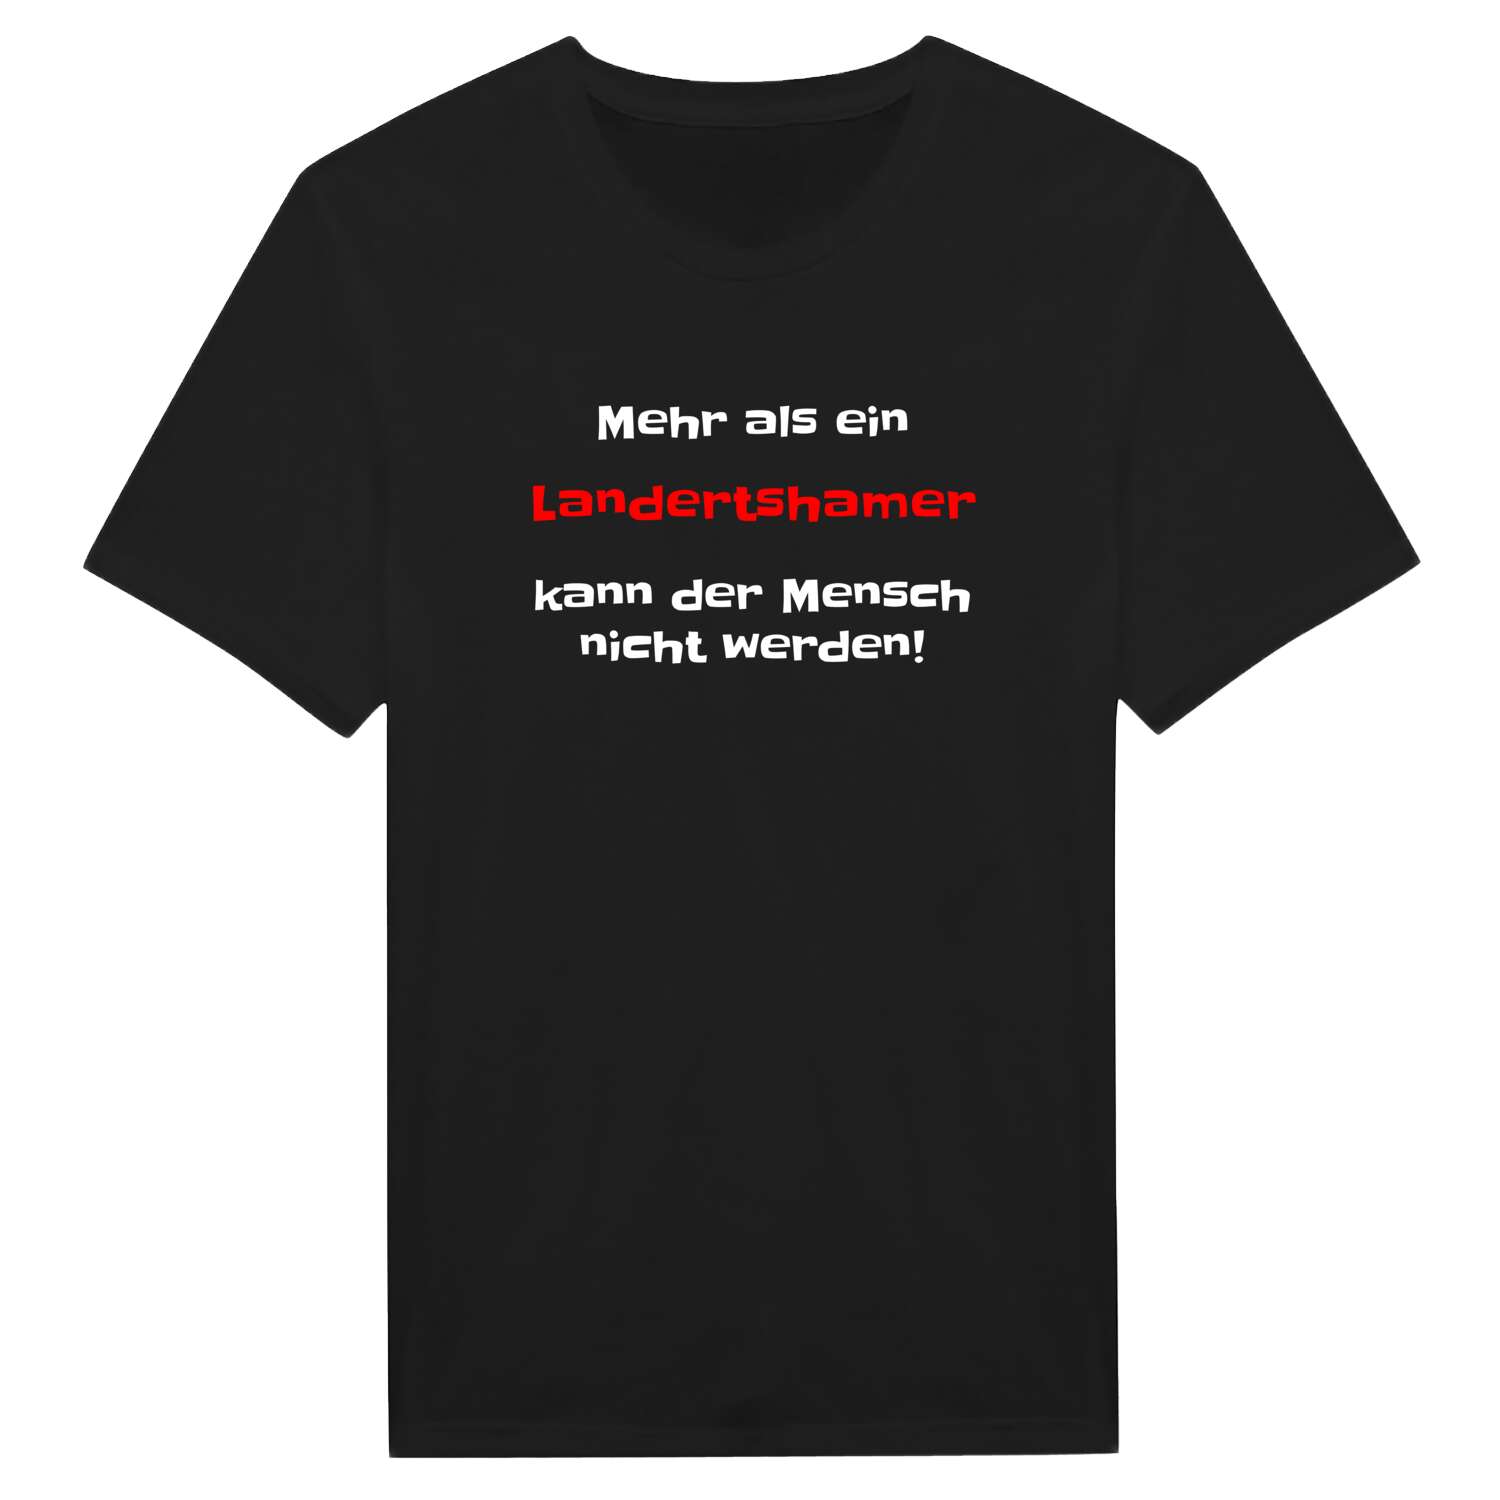 Landertsham T-Shirt »Mehr als ein«